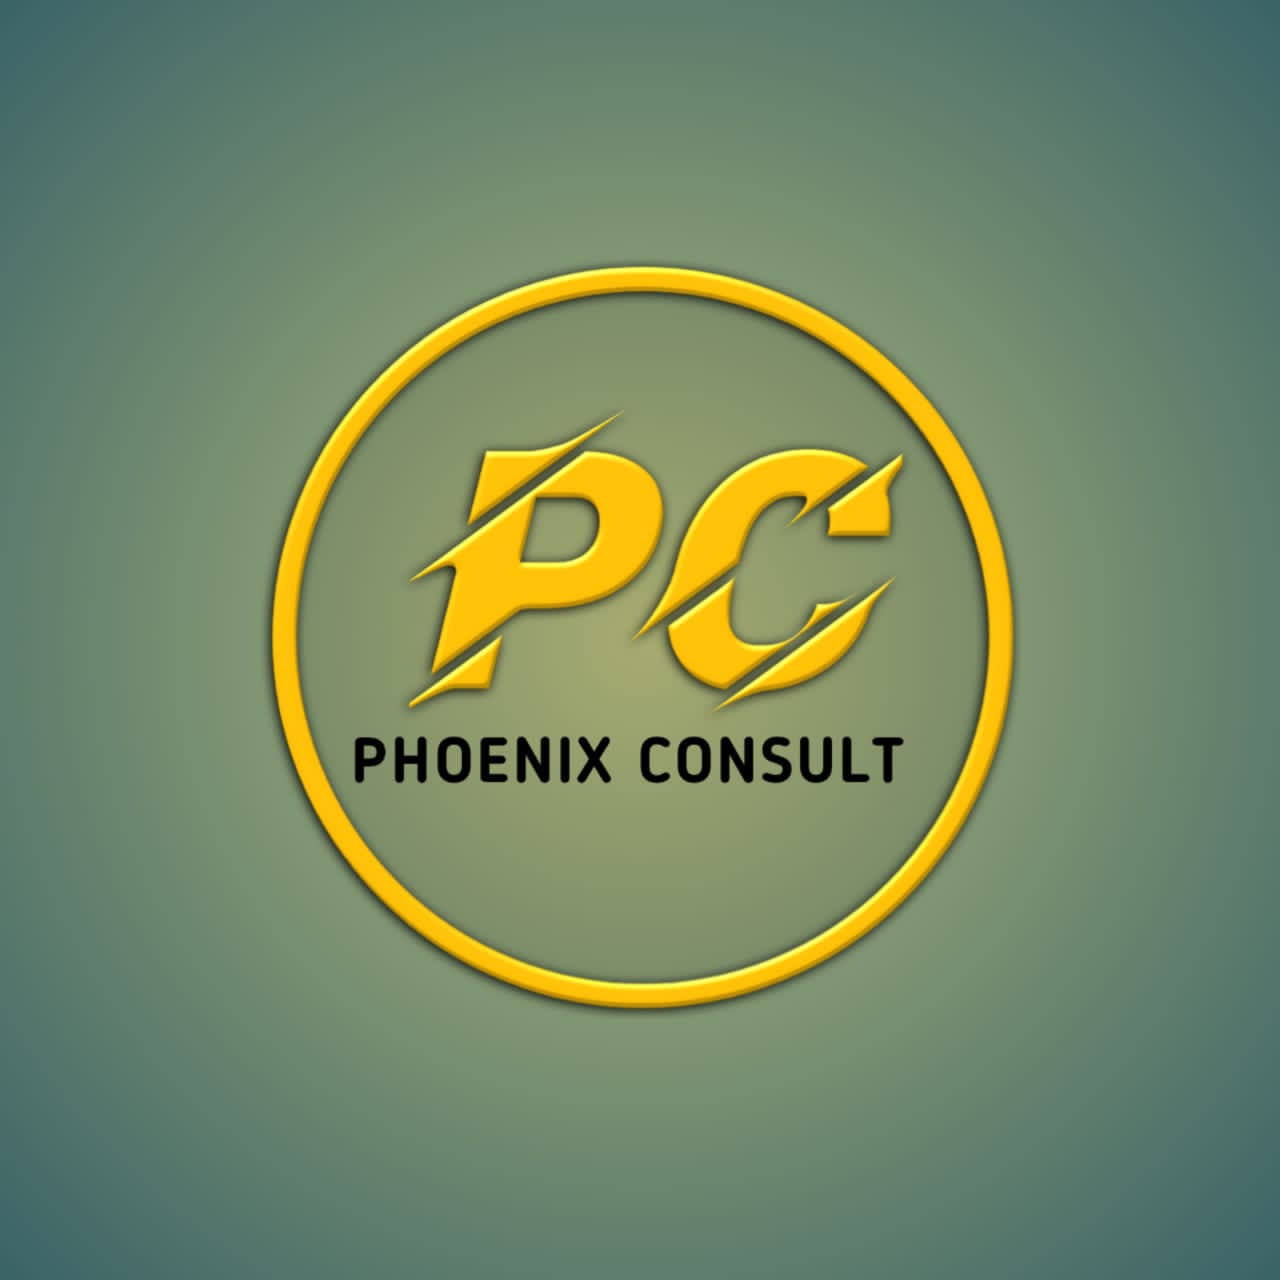 Phoenix Consult